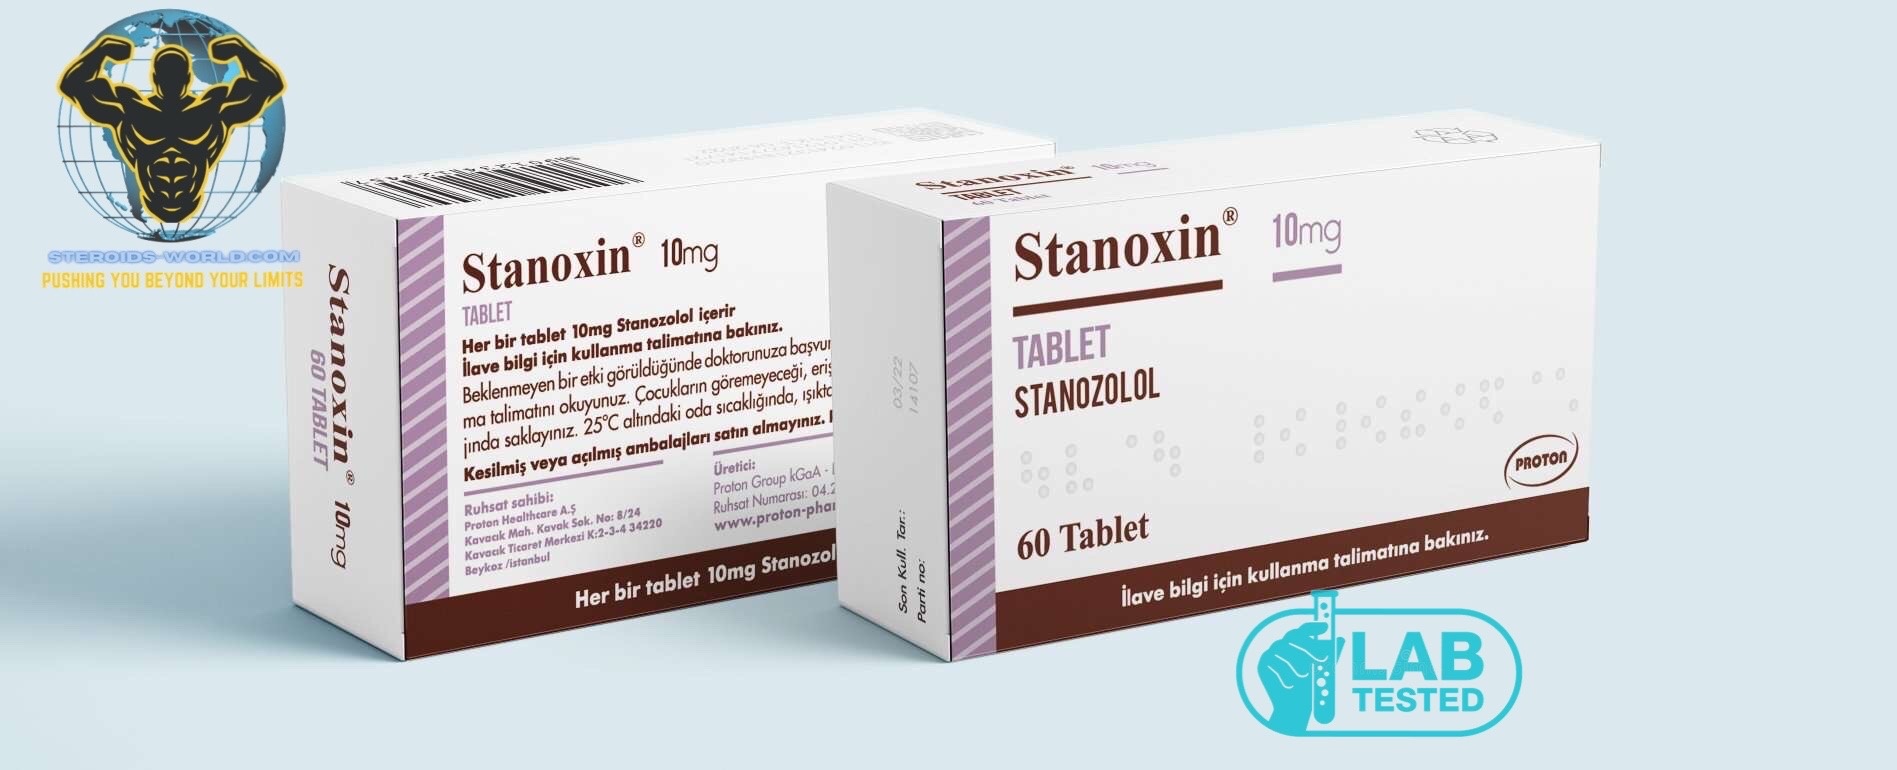 Buy Stanozolol 10mg